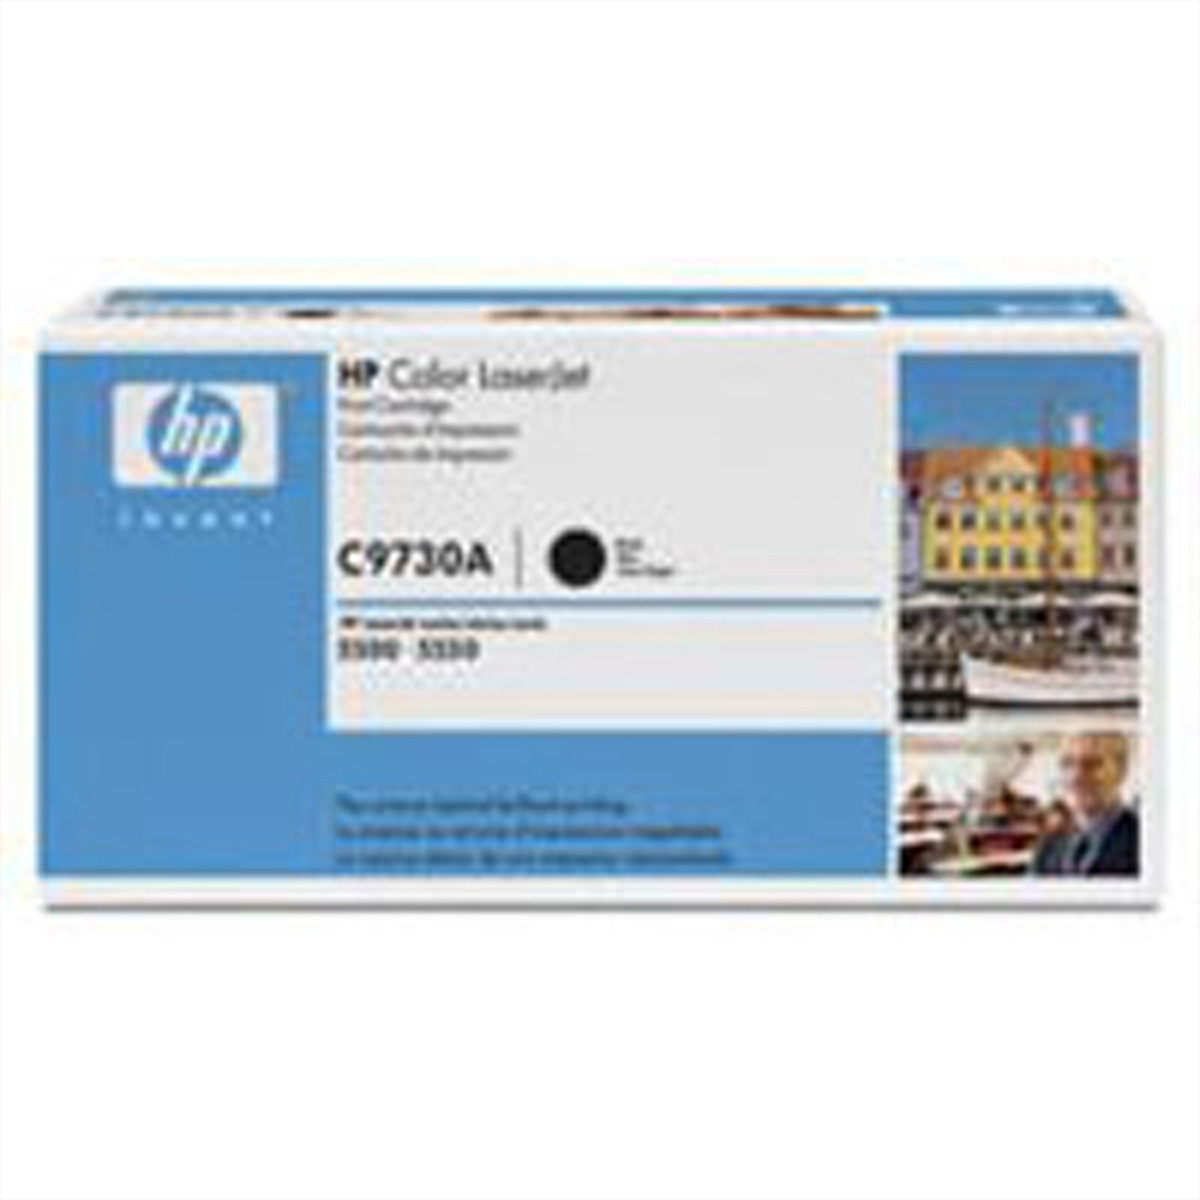 C9730A, HP Color LaserJet Druckkassette schwarz, ca. 13.000 Seiten